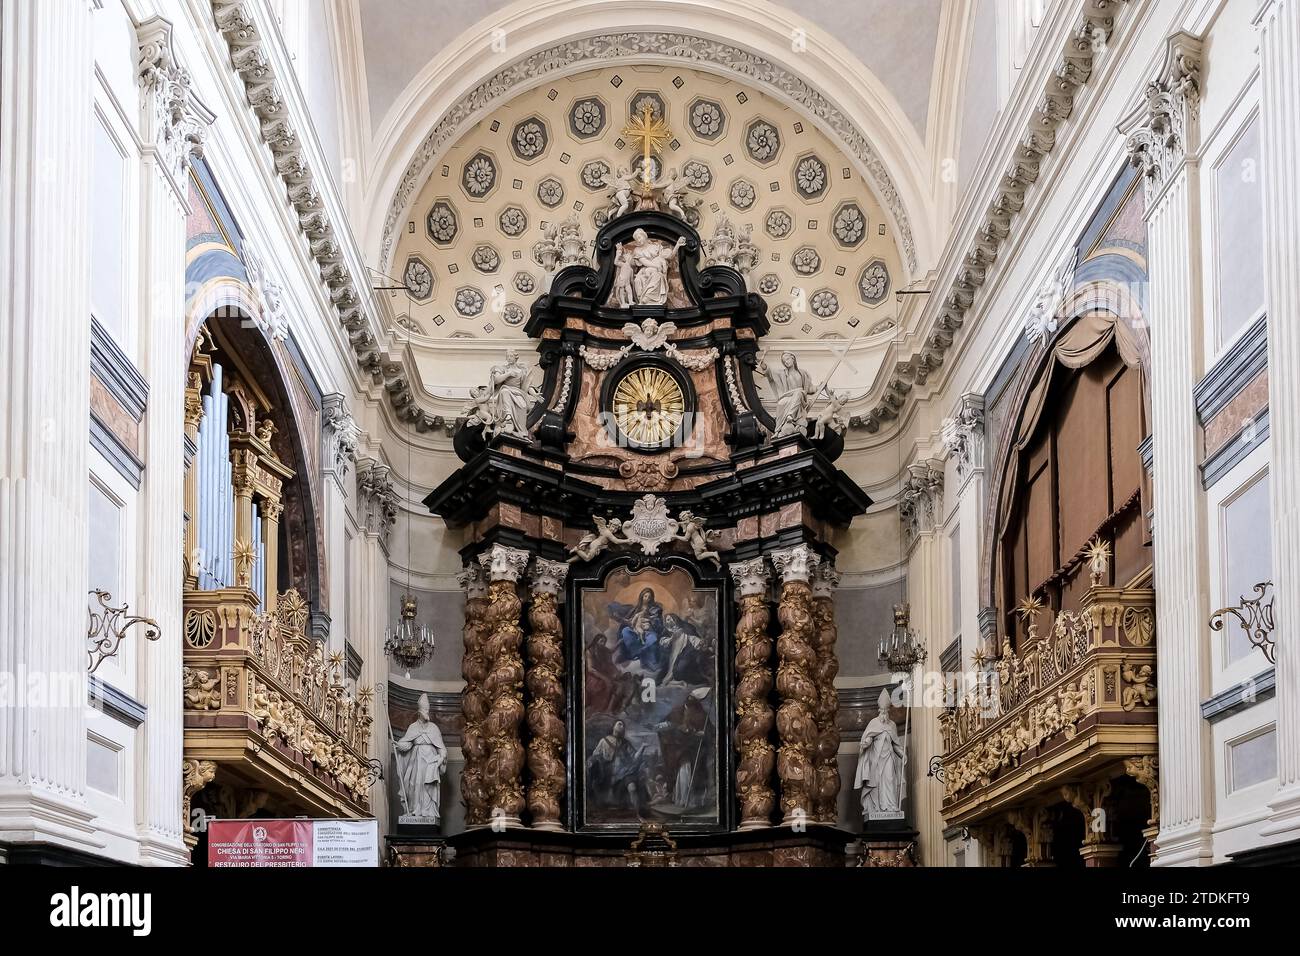 Interno di San Filippo Neri, chiesa cattolica romana in stile tardo barocco situata a Torino, regione Piemonte, Italia, Foto Stock